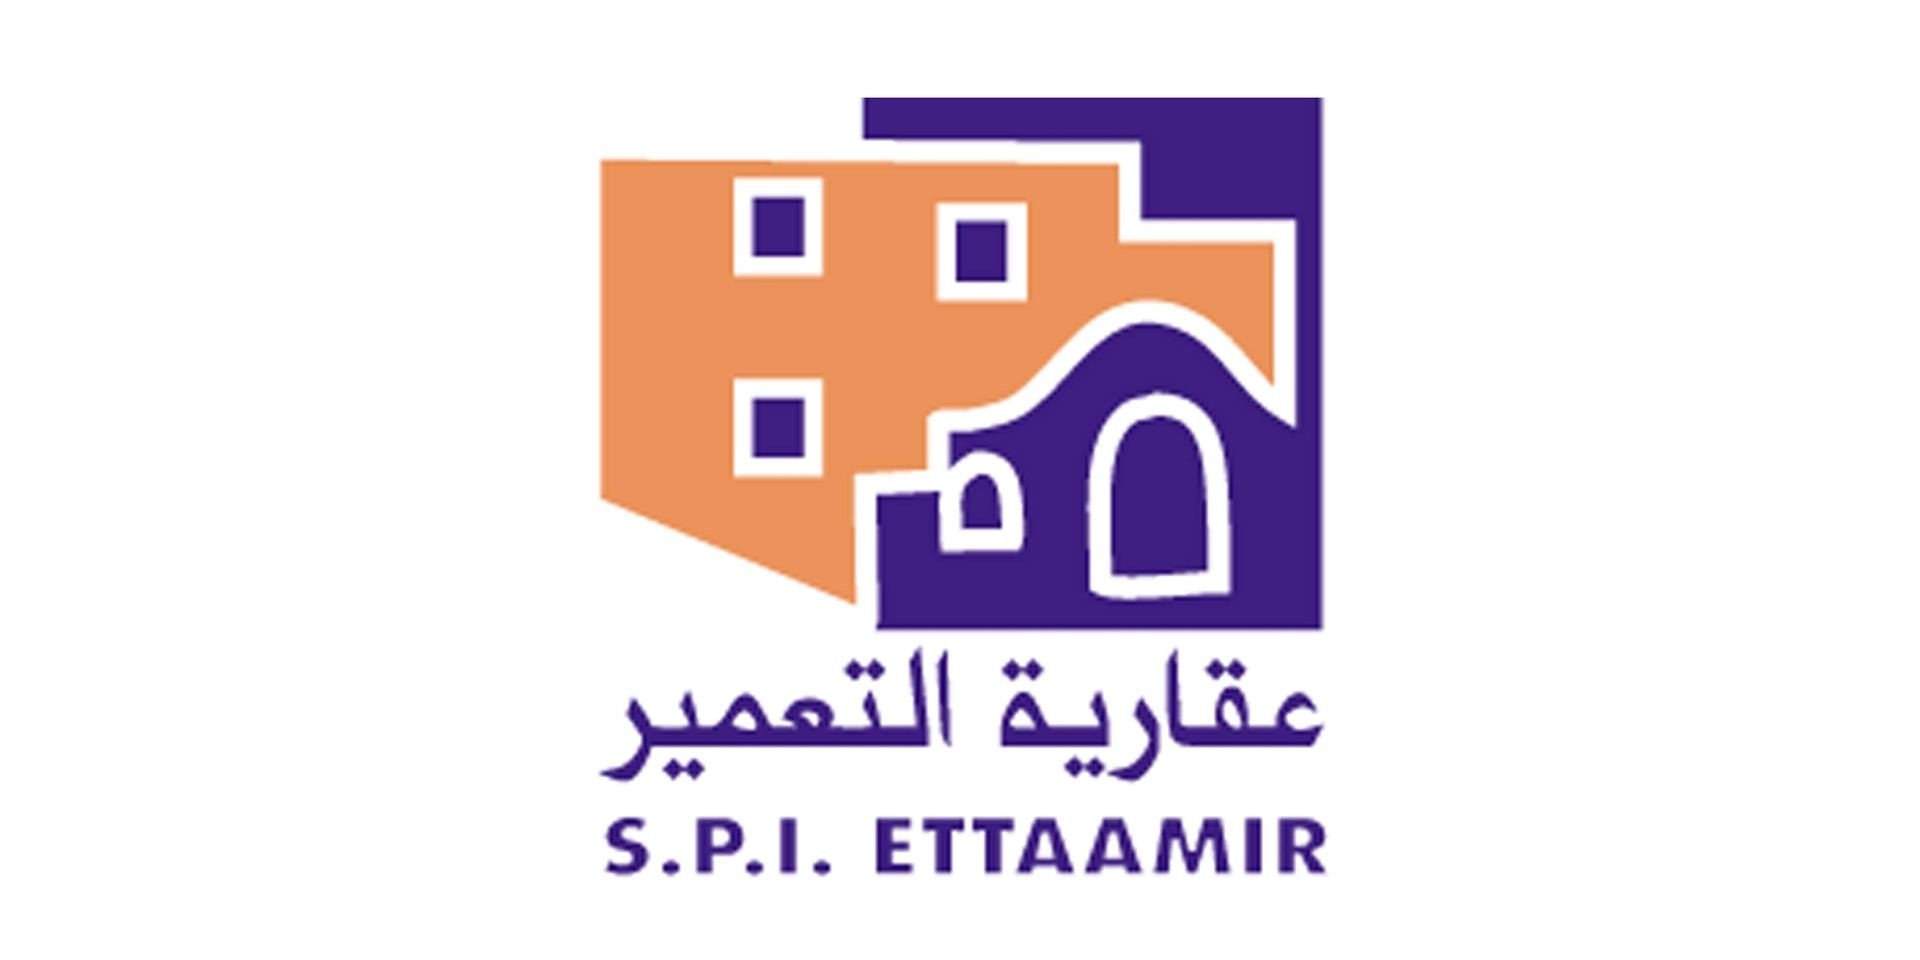 ETTAAMIR - logo